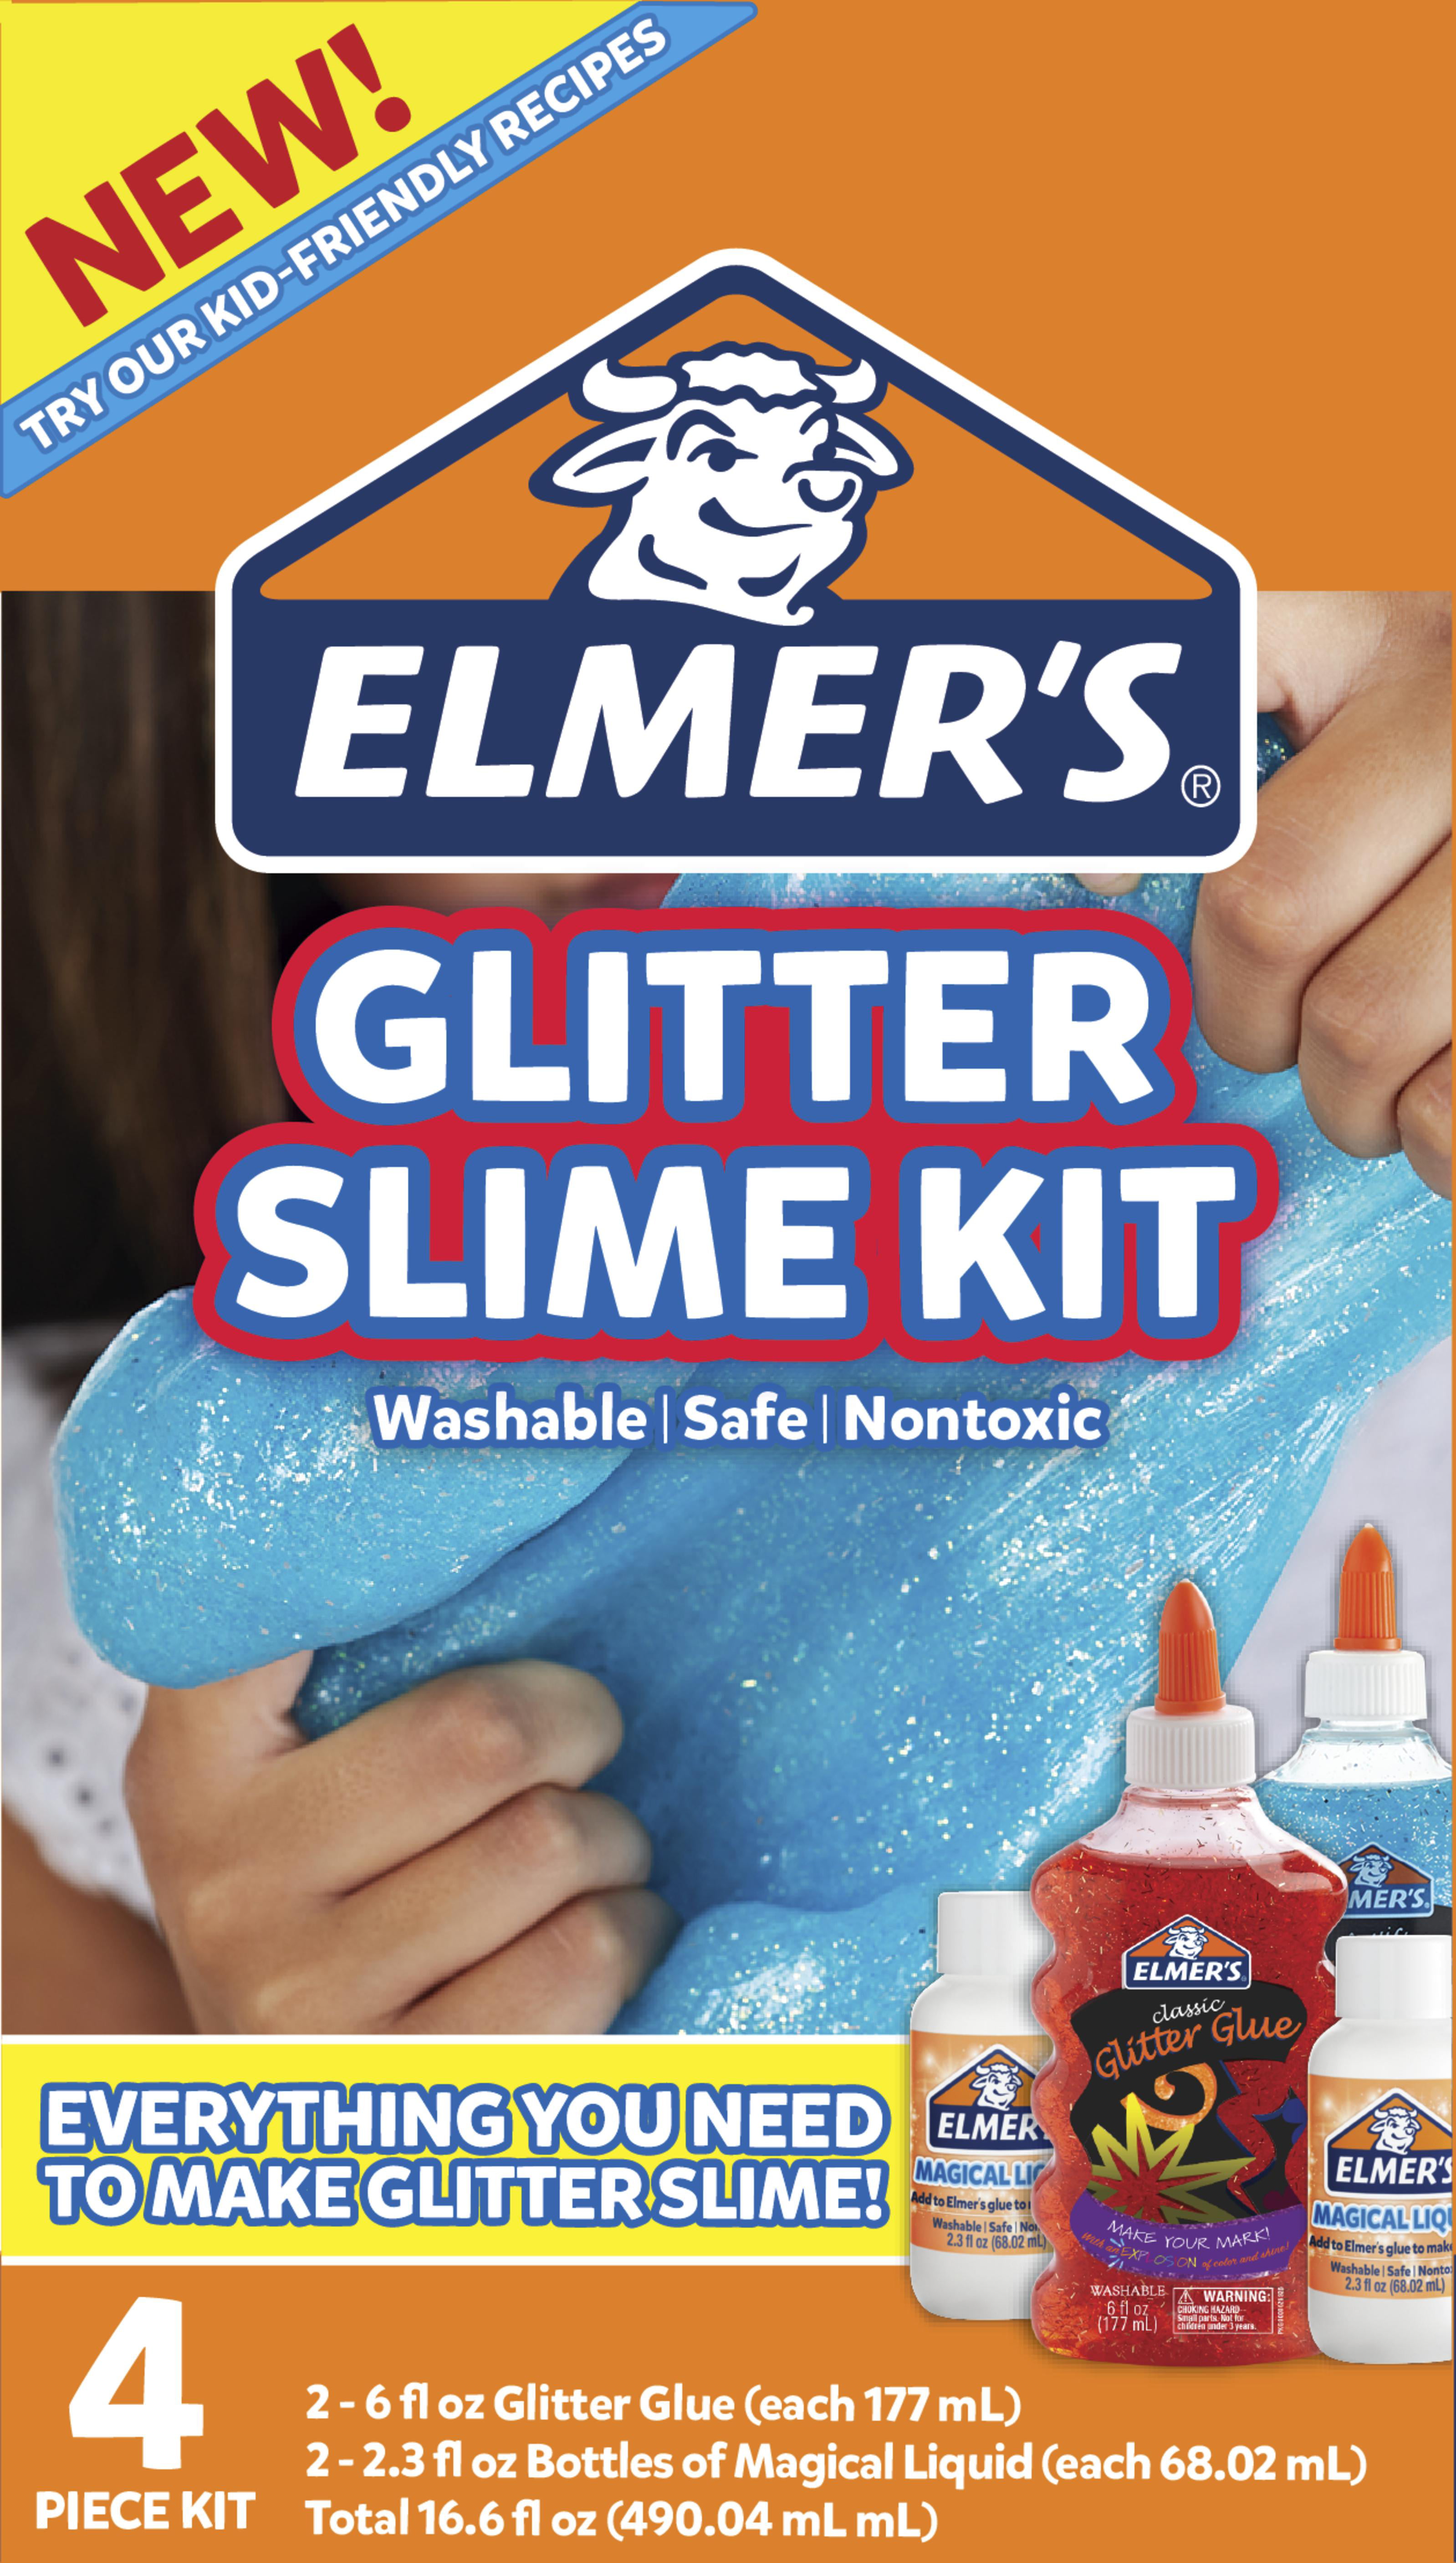  Elmer s  Glitter Slime  Kit Gift for Kids Includes Magical 